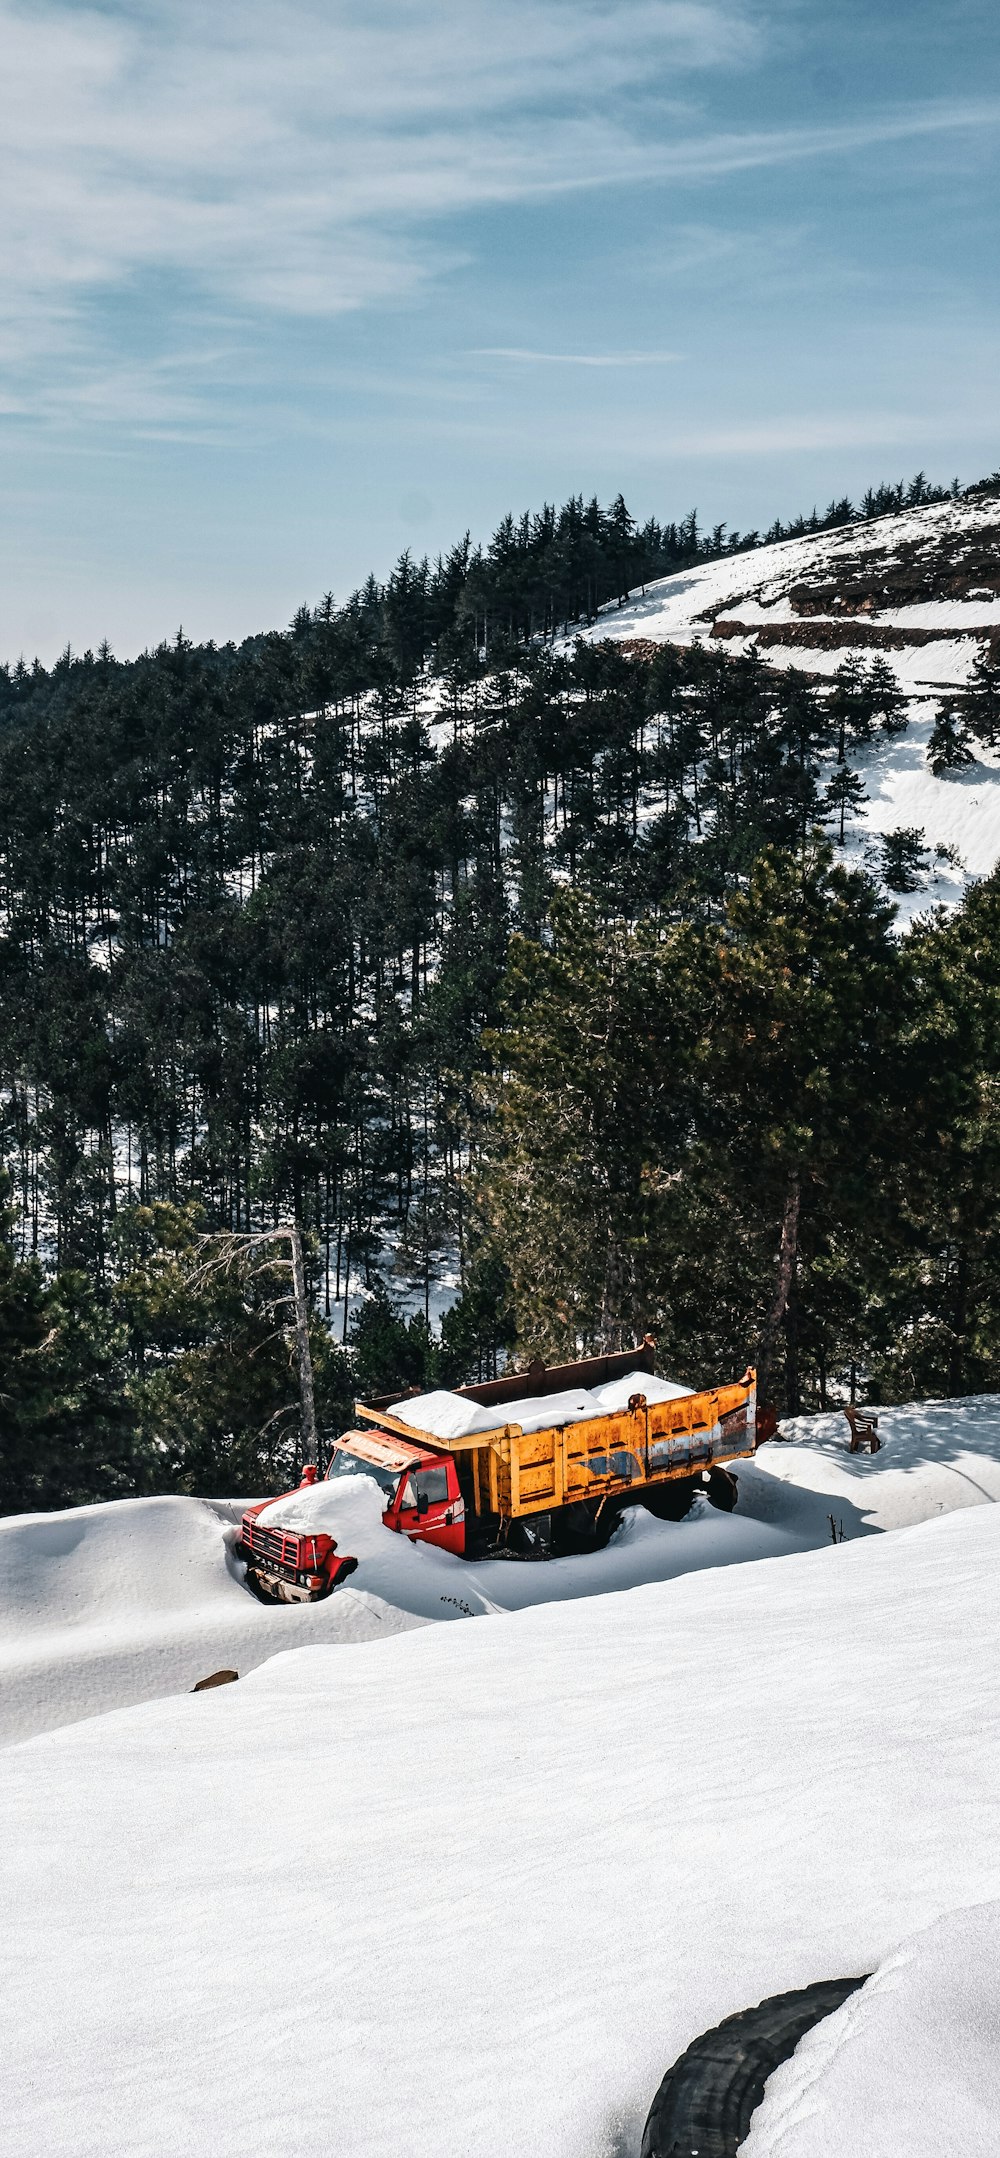 Un camion è parcheggiato nella neve vicino ad alcuni alberi